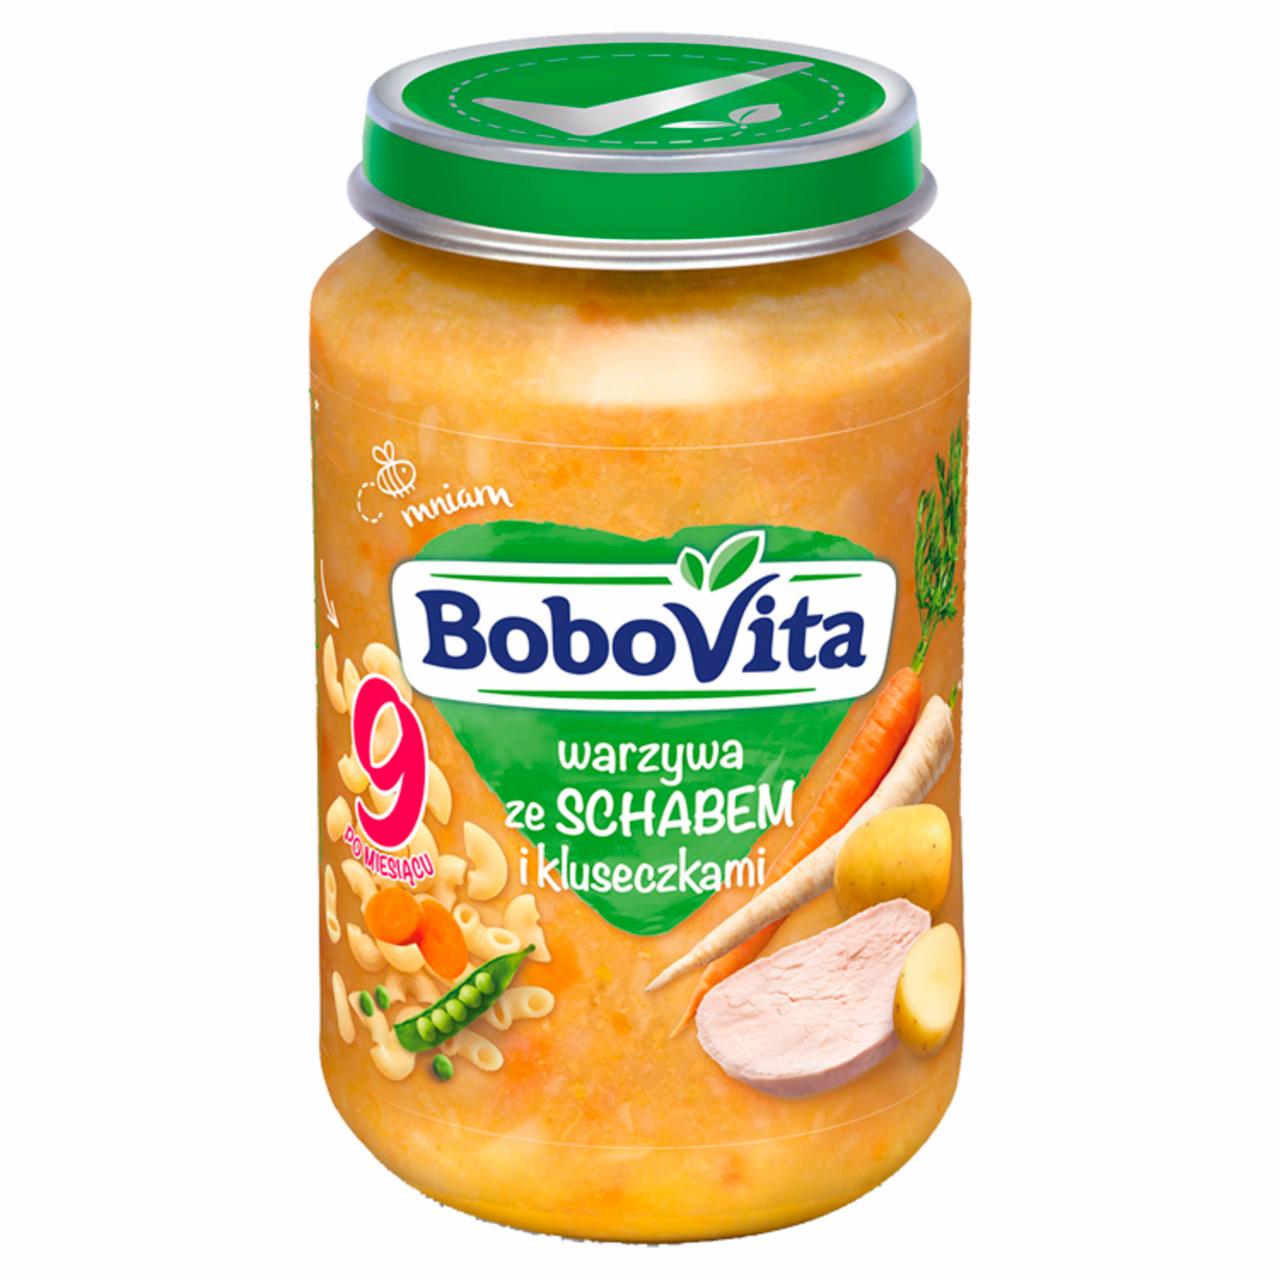 Zdjęcia - BoboVita Warzywa ze schabem i kluseczkami po 9 miesiącu 190 g